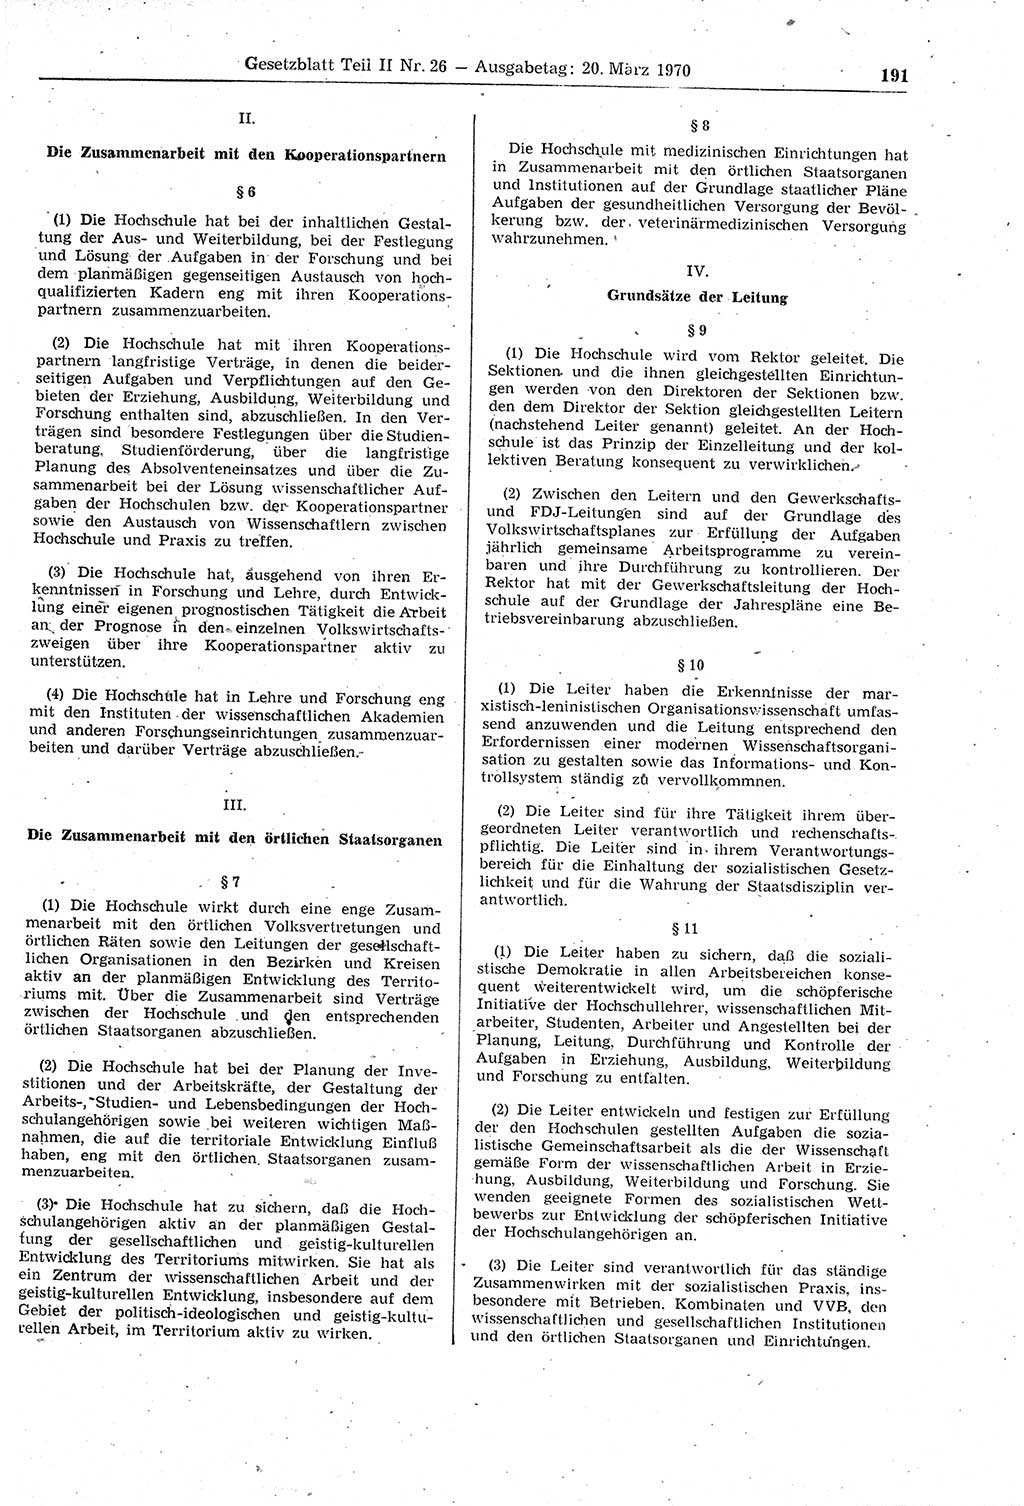 Gesetzblatt (GBl.) der Deutschen Demokratischen Republik (DDR) Teil ⅠⅠ 1970, Seite 191 (GBl. DDR ⅠⅠ 1970, S. 191)